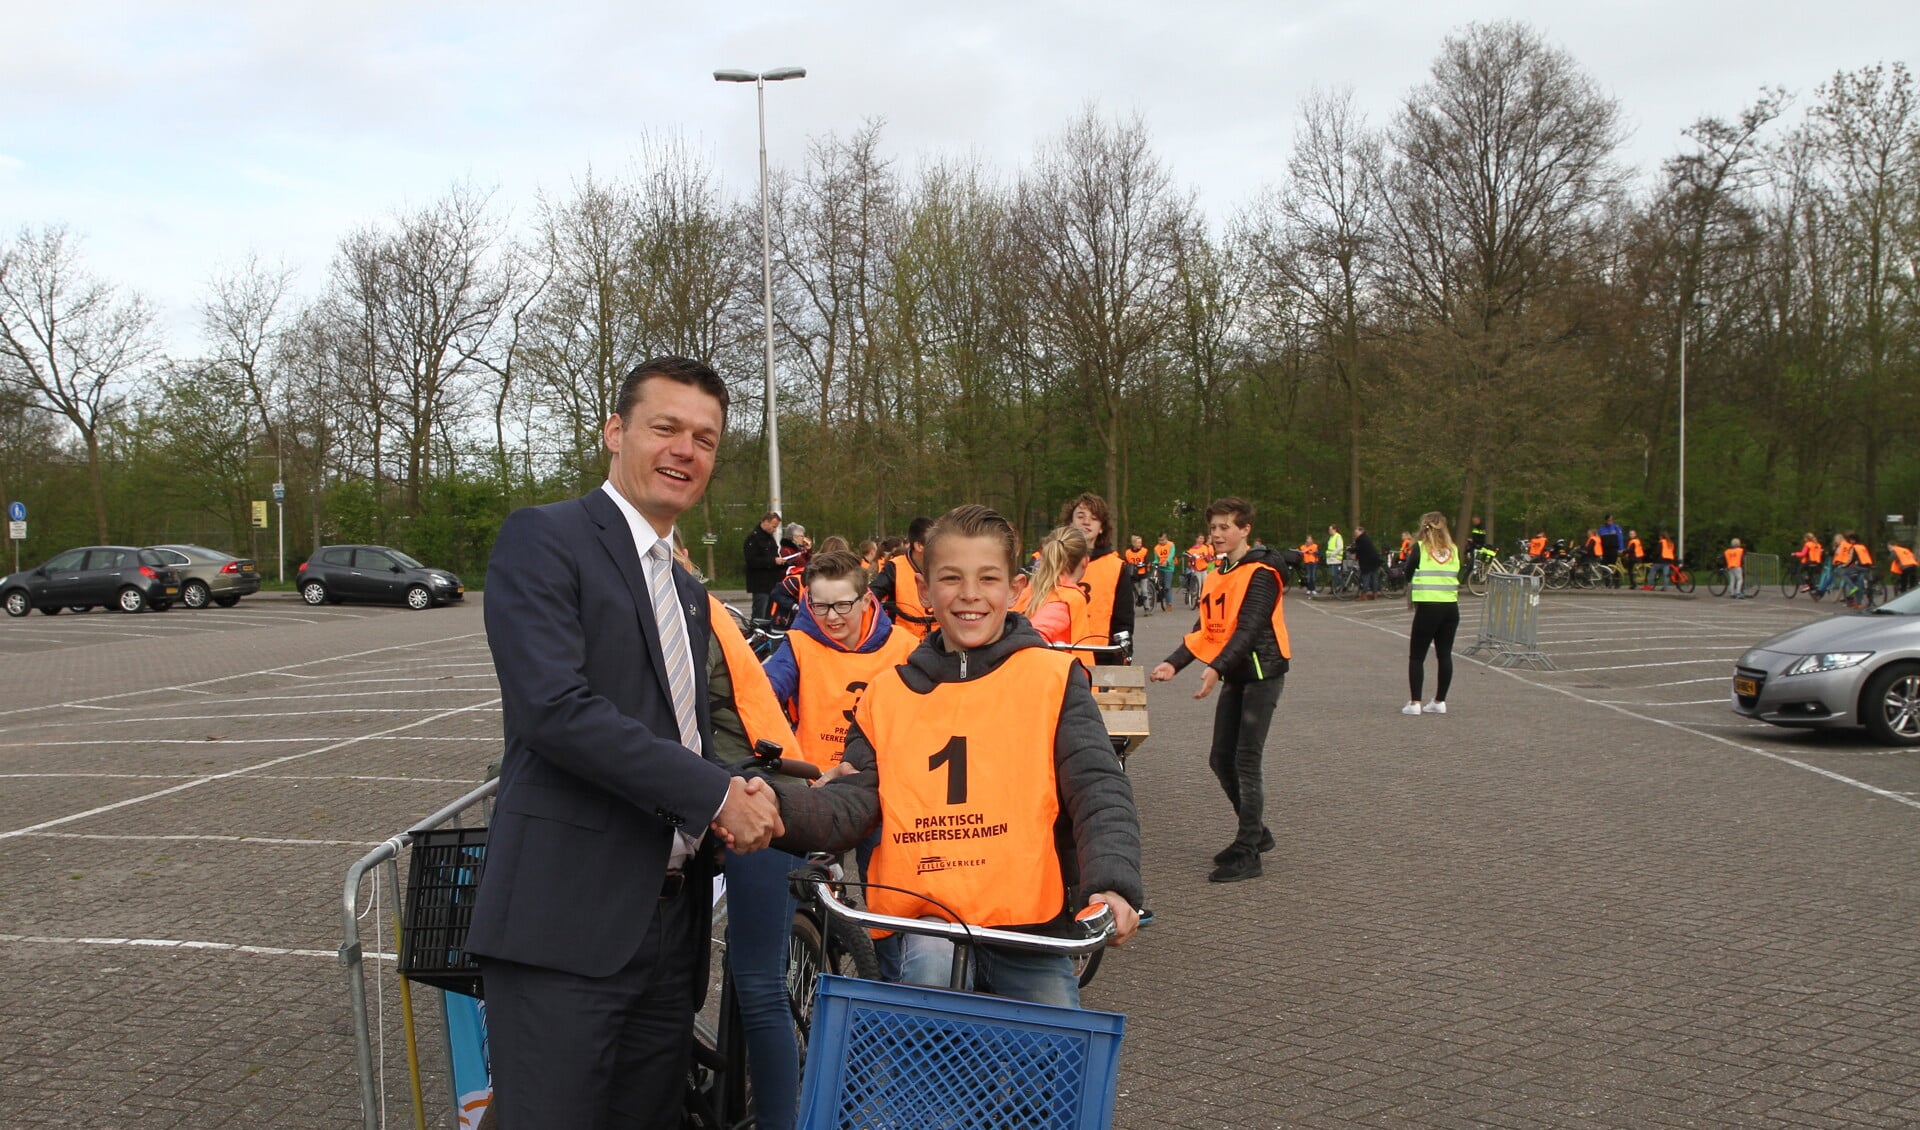 Met een ferme handdruk wenste wethouder Nieuwenhuis de eerste deelnemer aan het verkeersexamen succes. | 